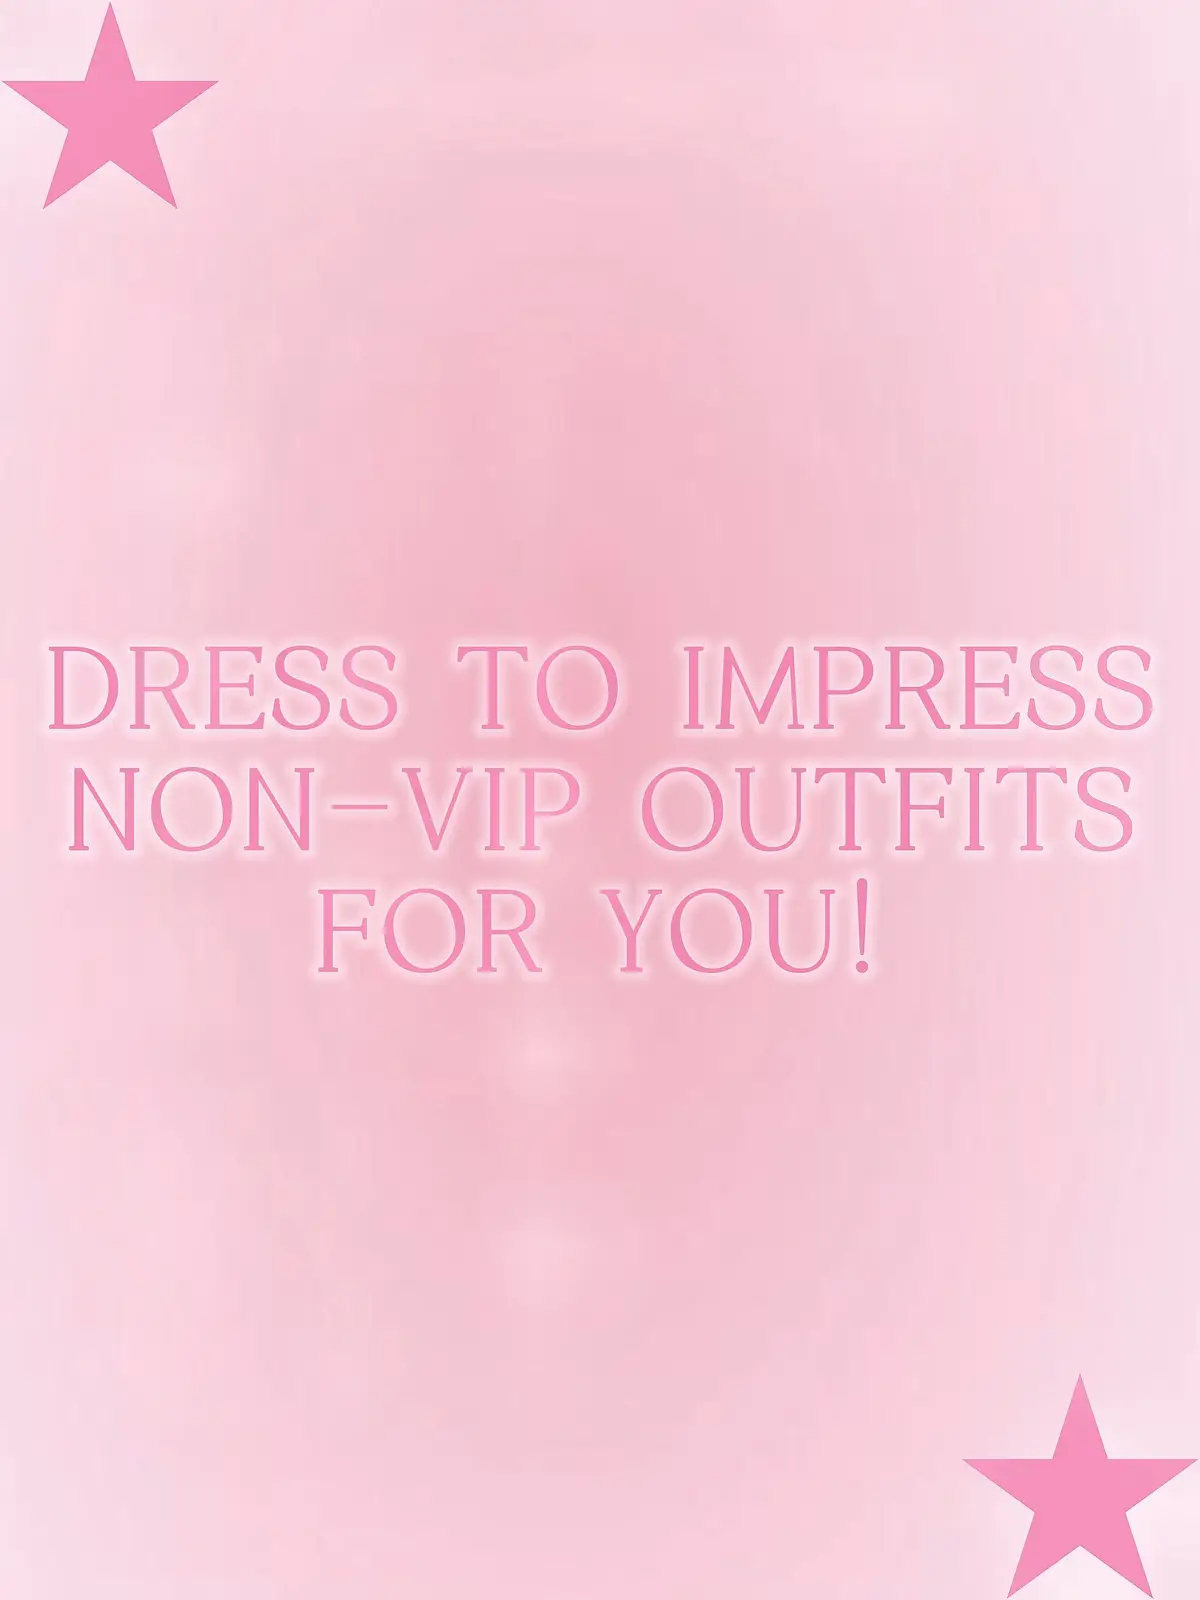 DRESS TO IMPRESS NON-VIP OUTFITS FOR YOU!#dresstoimpress #fashion #roblox #trending #fypシ #DTI #theme #nonvipdresstoimpress #